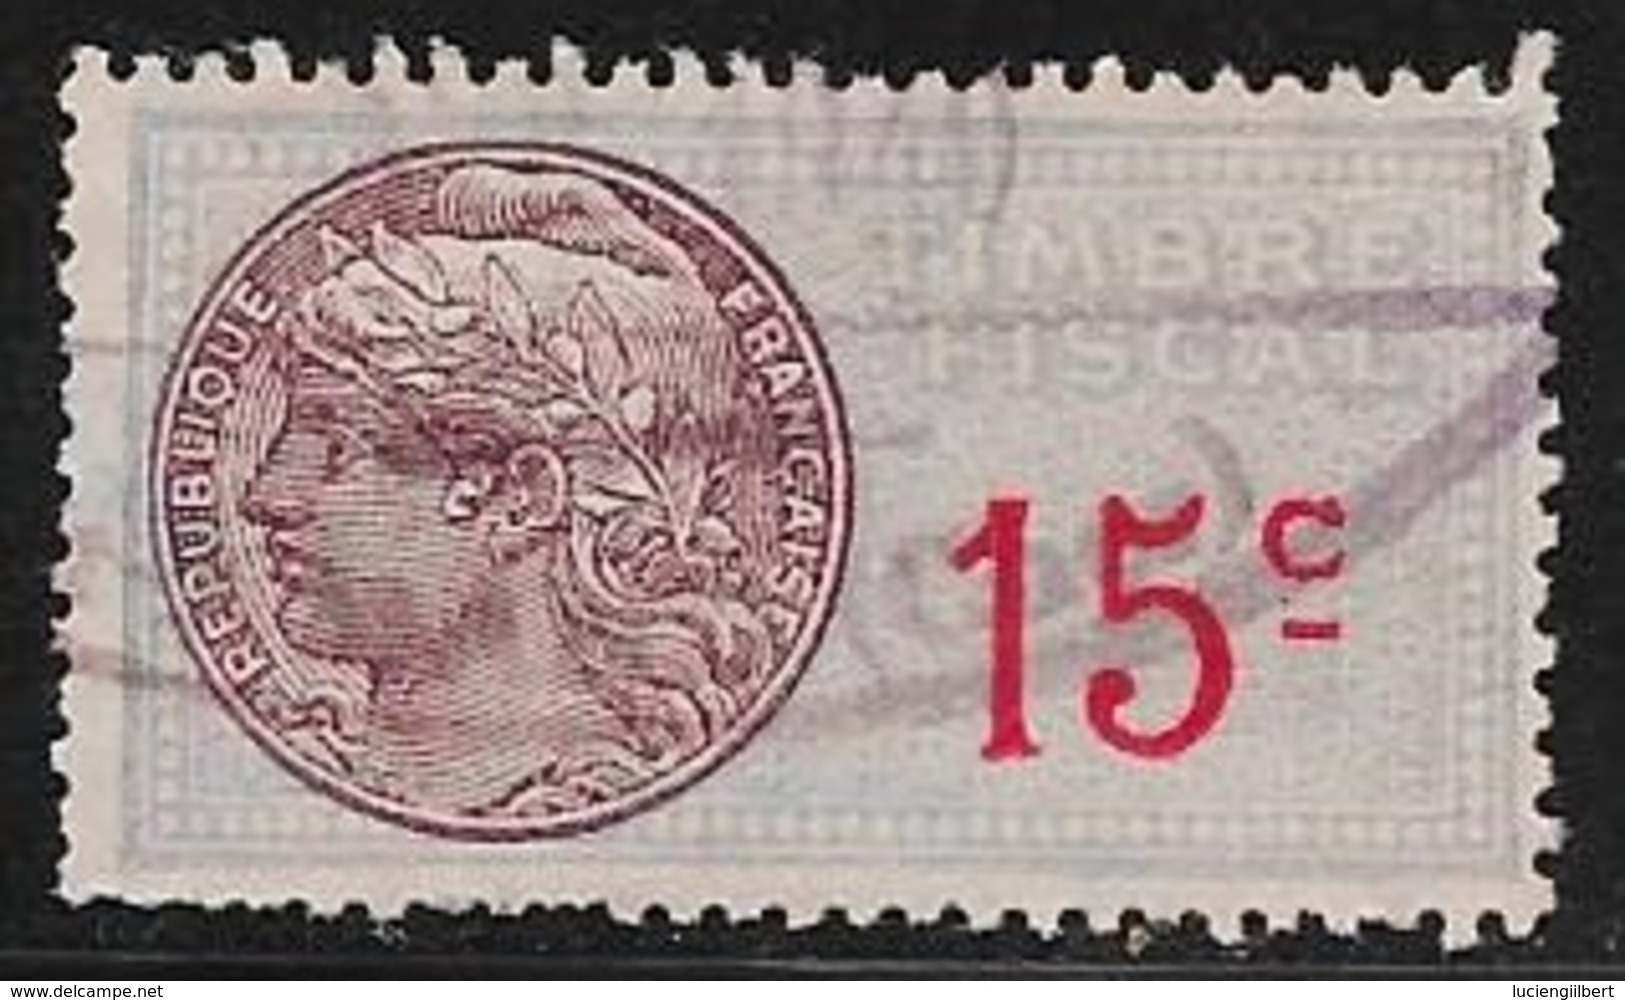 TIMBRE  FISCAL    N°59  -  15C ROUGE SUR BLEU ET MAUVE  -  MEDAILLON DAUSSY    -  OBLITERE - Stamps